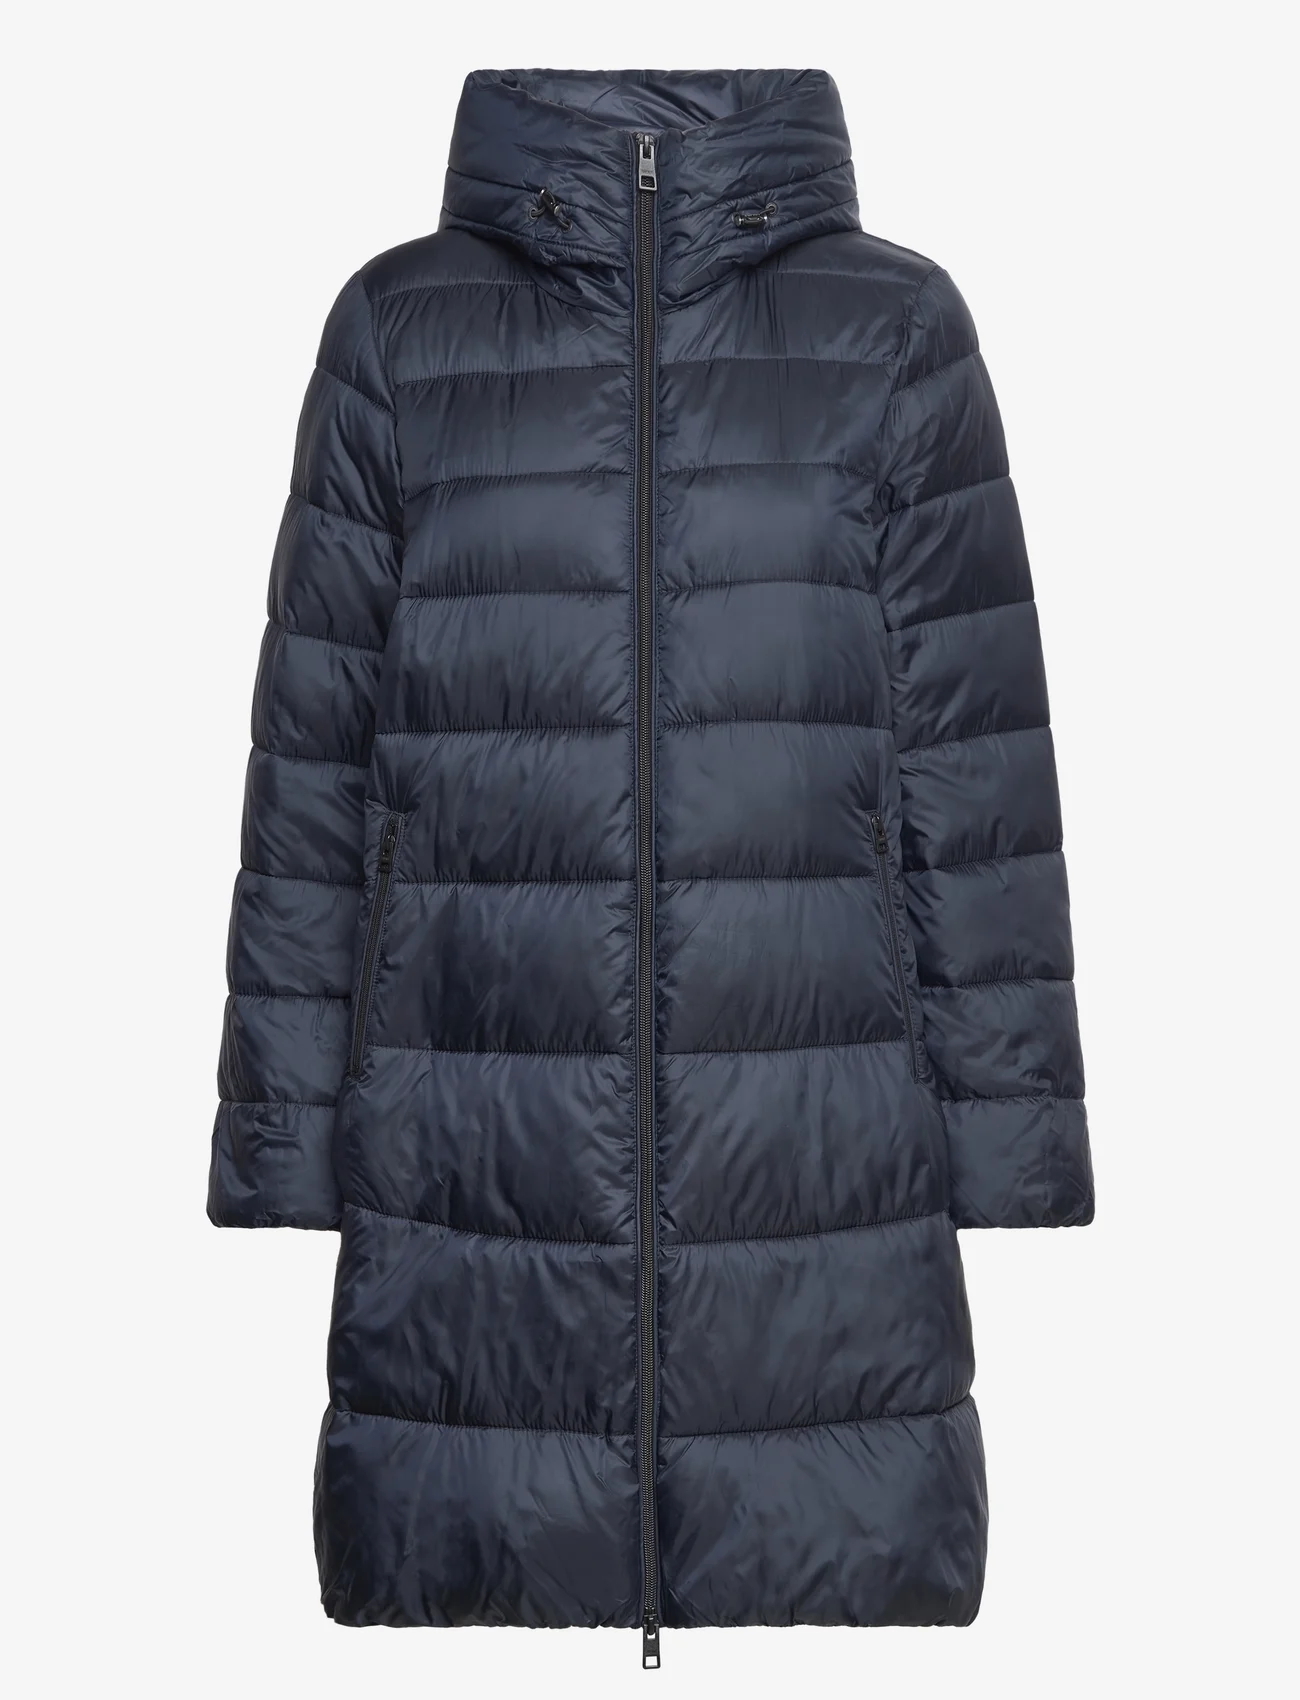 Esprit Casual - Women Coats woven regular - winterjacken - navy - 0